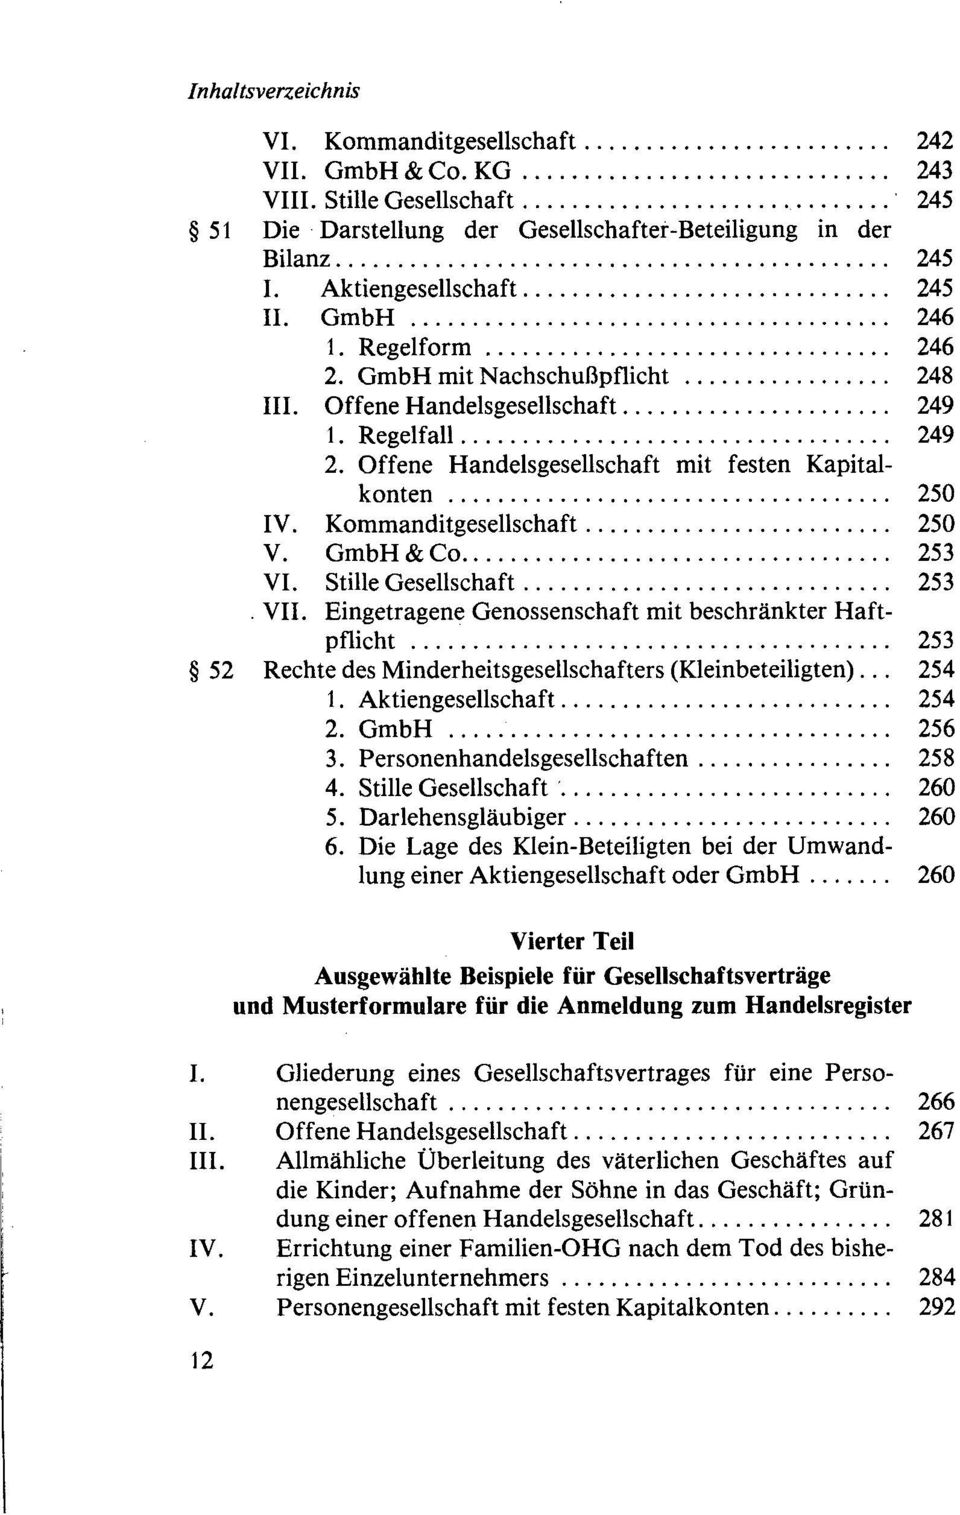 GmbH & Co 253 VI. Stille Gesellschaft 253. VII. Eingetragene Genossenschaft mit beschränkter Haftpflicht 253 52 Rechte des Minderheitsgesellschafters (Kleinbeteiligten)... 254 1.